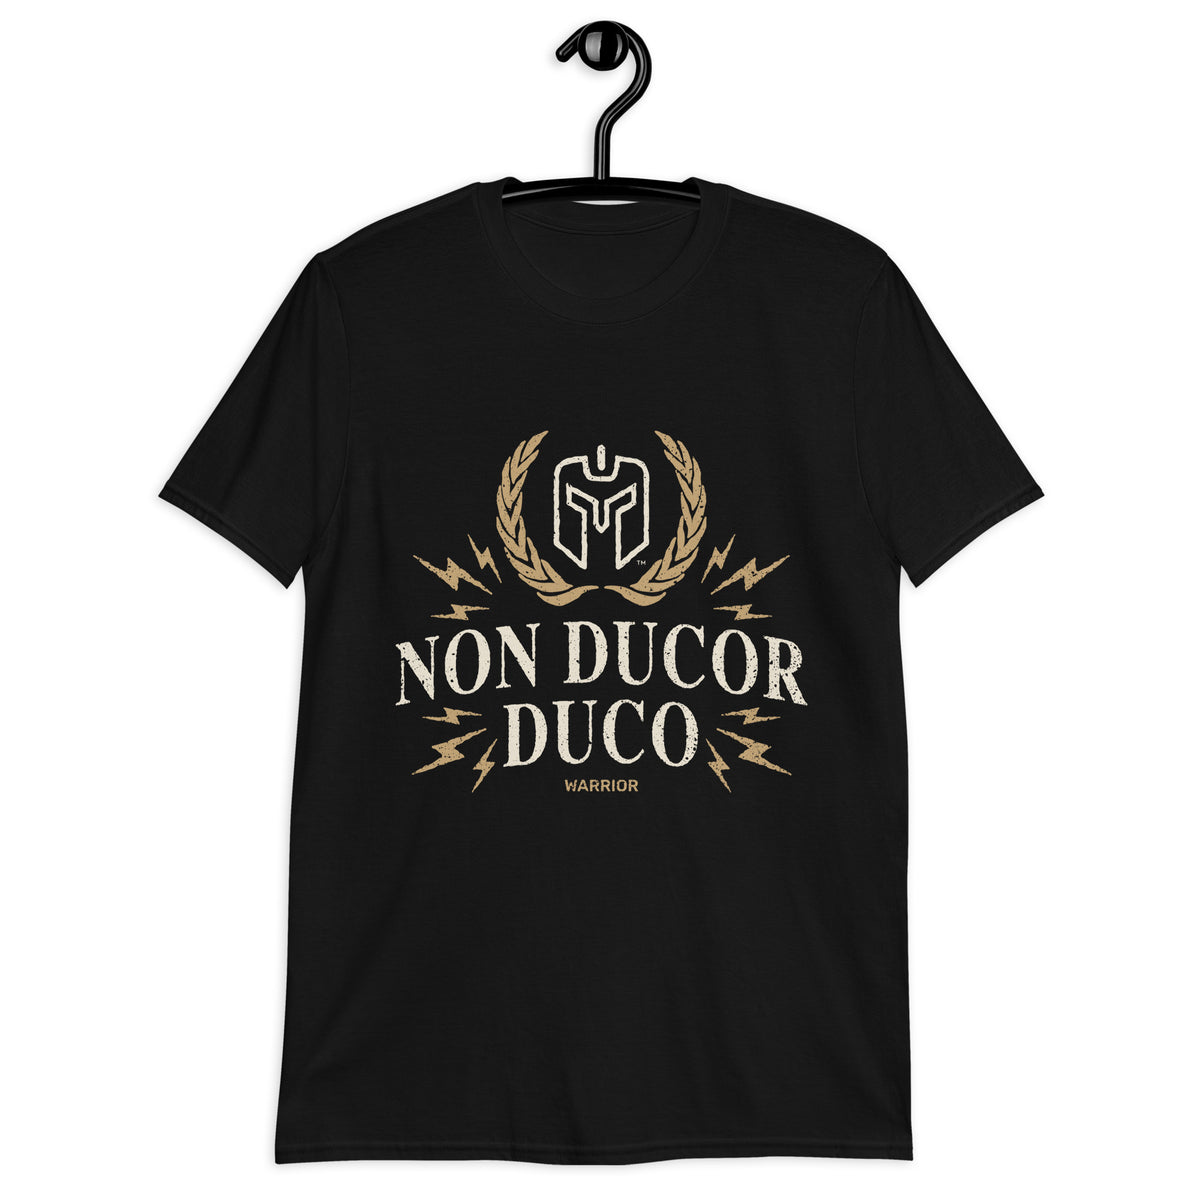 NON DUCOR DUCO (Latin- I Am Not Led, I Lead) Warrior - Short-Sleeve Unisex T-Shirt